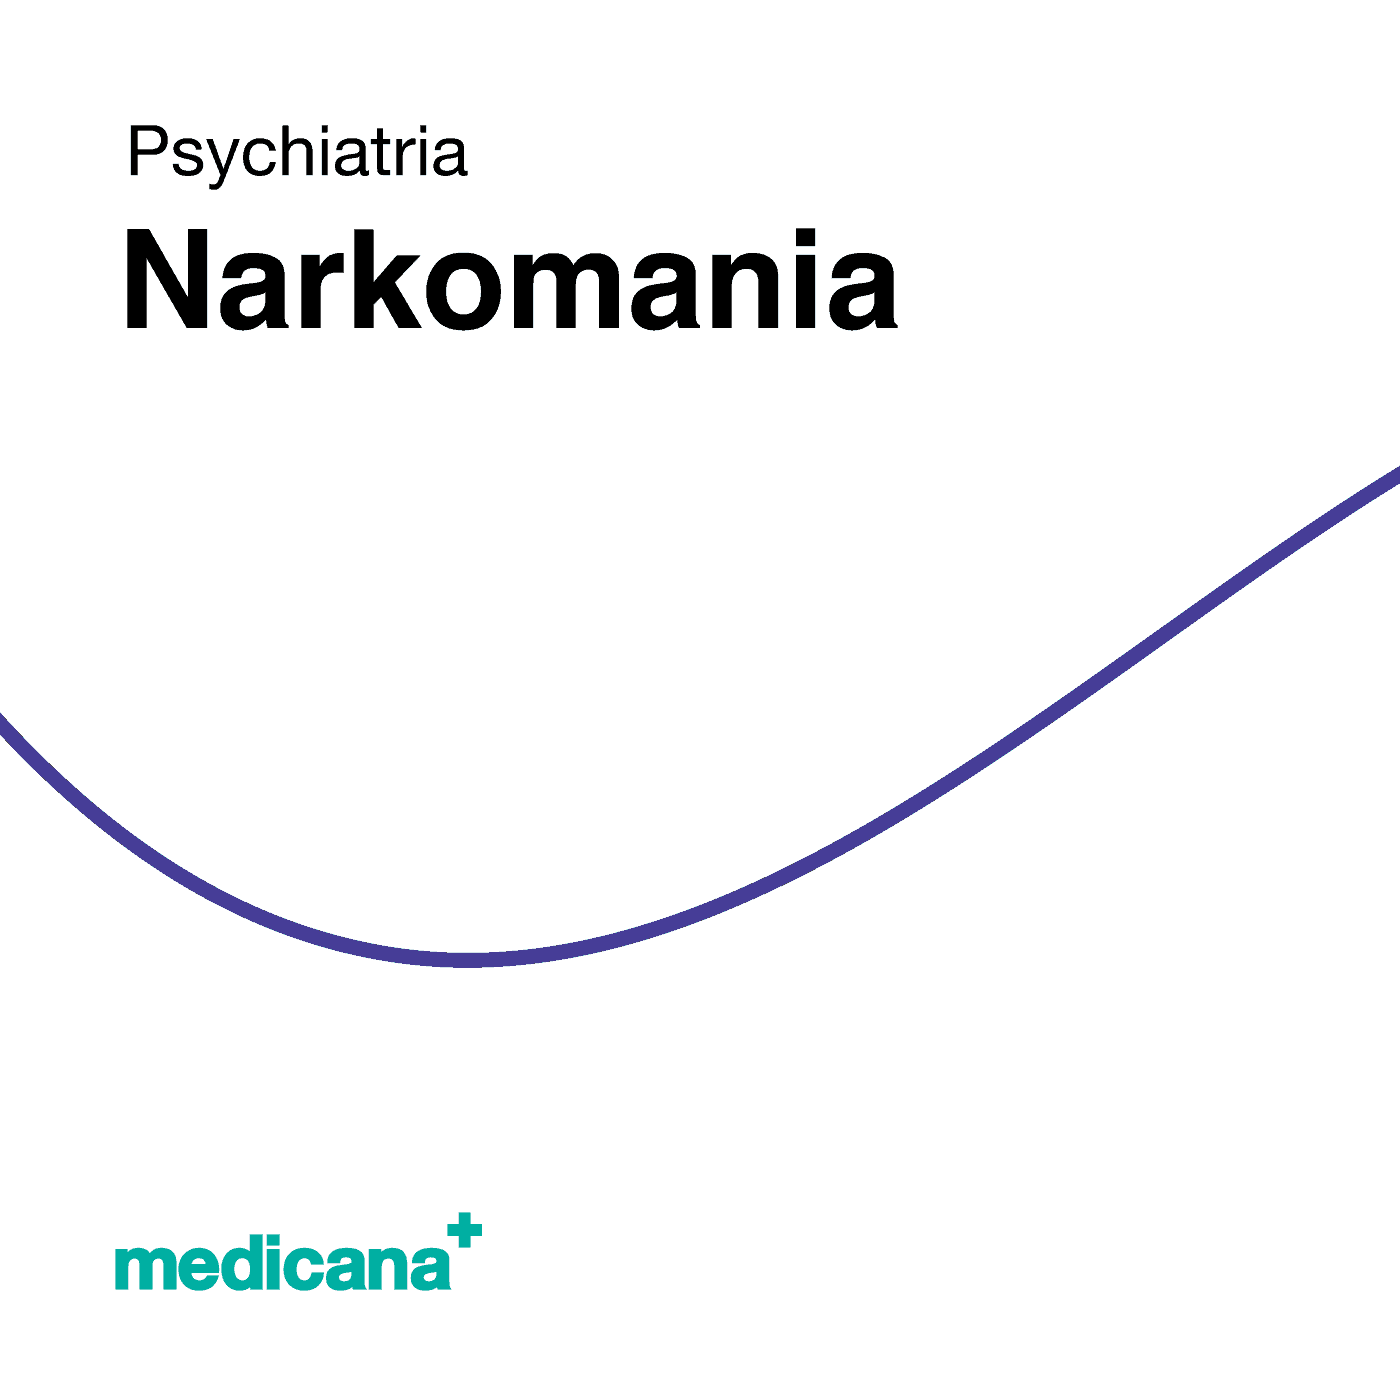 Grafika, białe tło z granatową kreską, czarnym napisem Psychiatria - Narkomania i logo Medicana Centrum Terapii Medyczna Marihuana w lewym dolnym rogu.